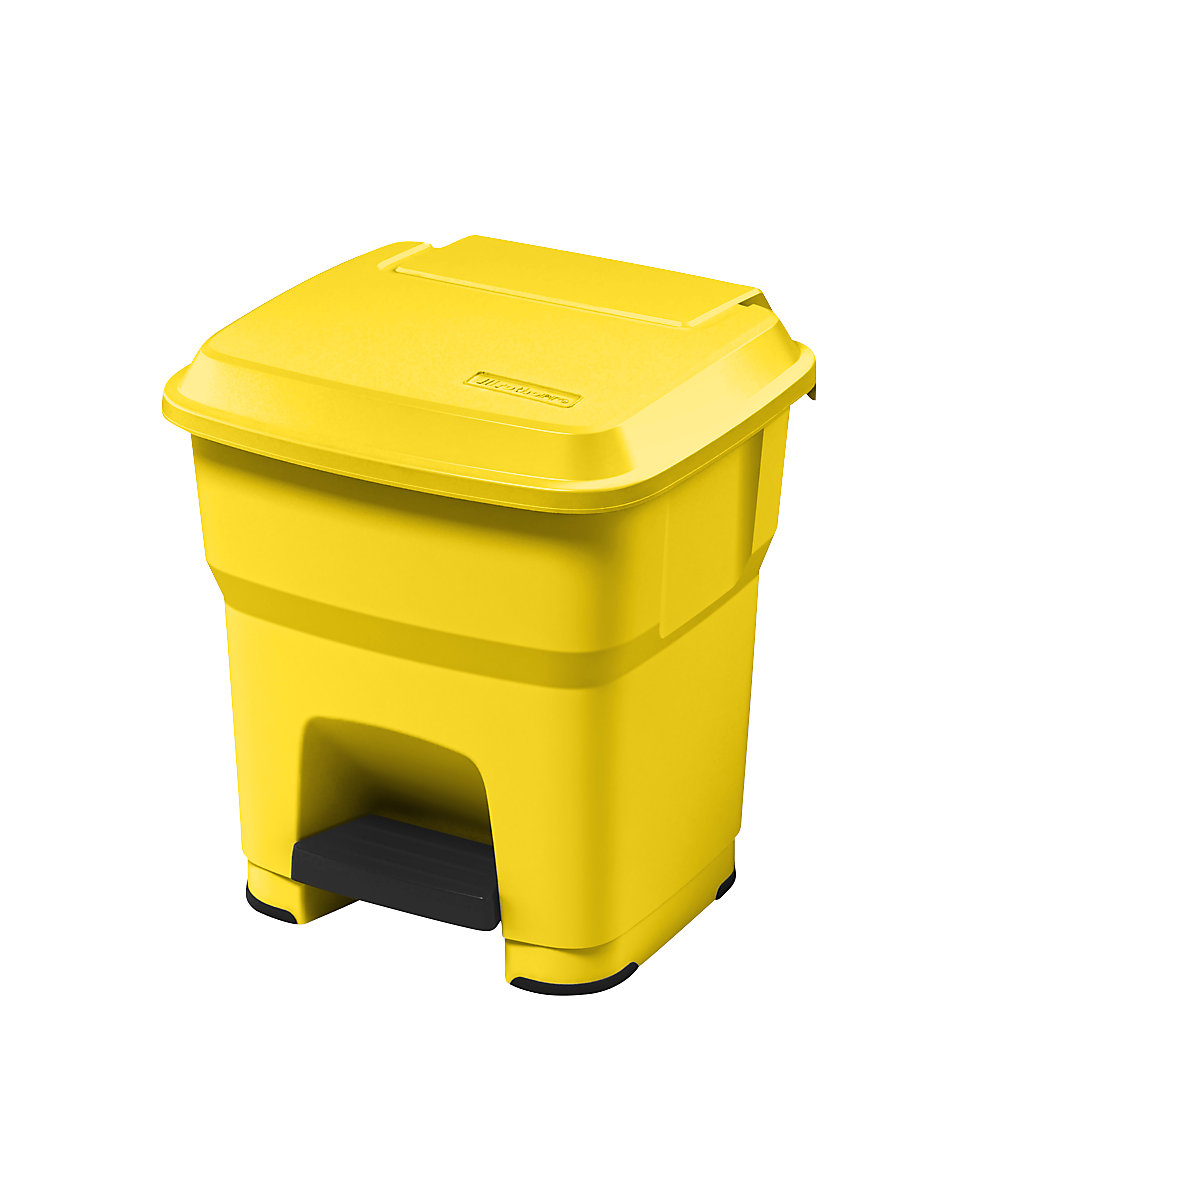 rothopro – Nádoba na odpad s pedálem HERA, objem 35 l, š x v x h 390 x 440 x 390 mm, žlutá